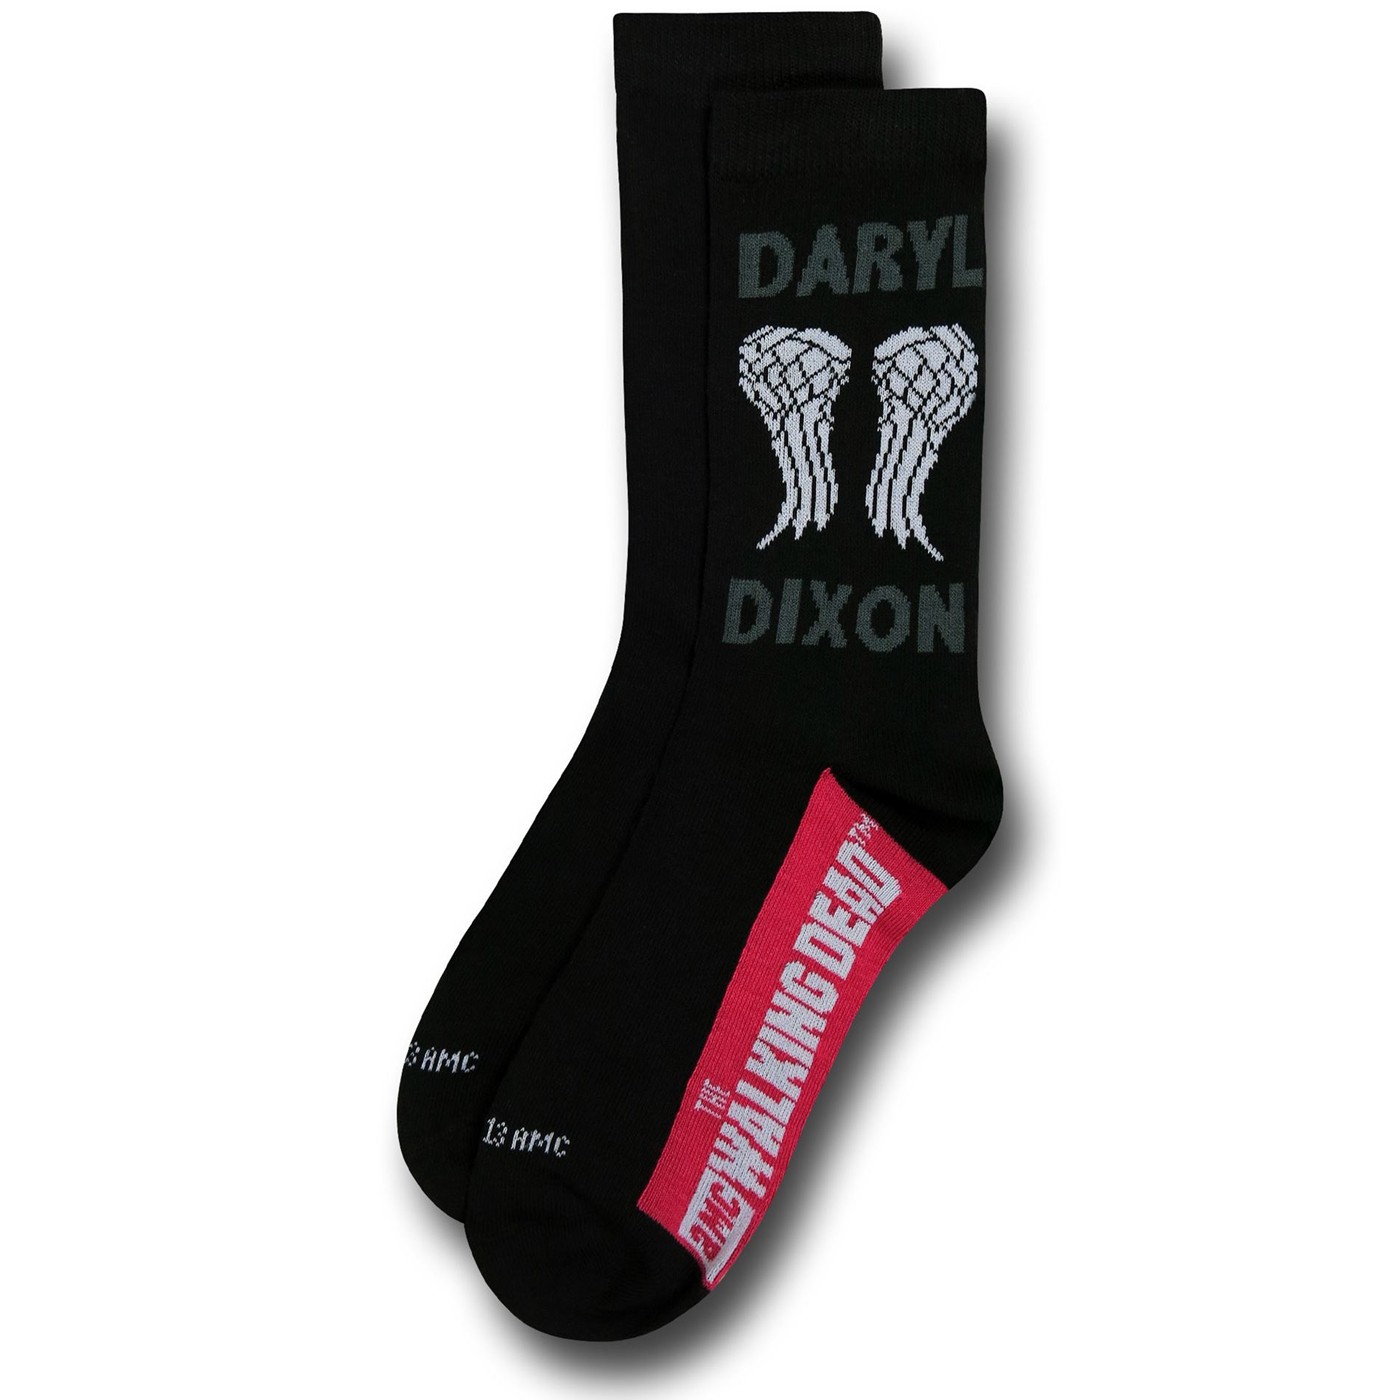 Walking Dead Daryl Women's Sock 2-Pack